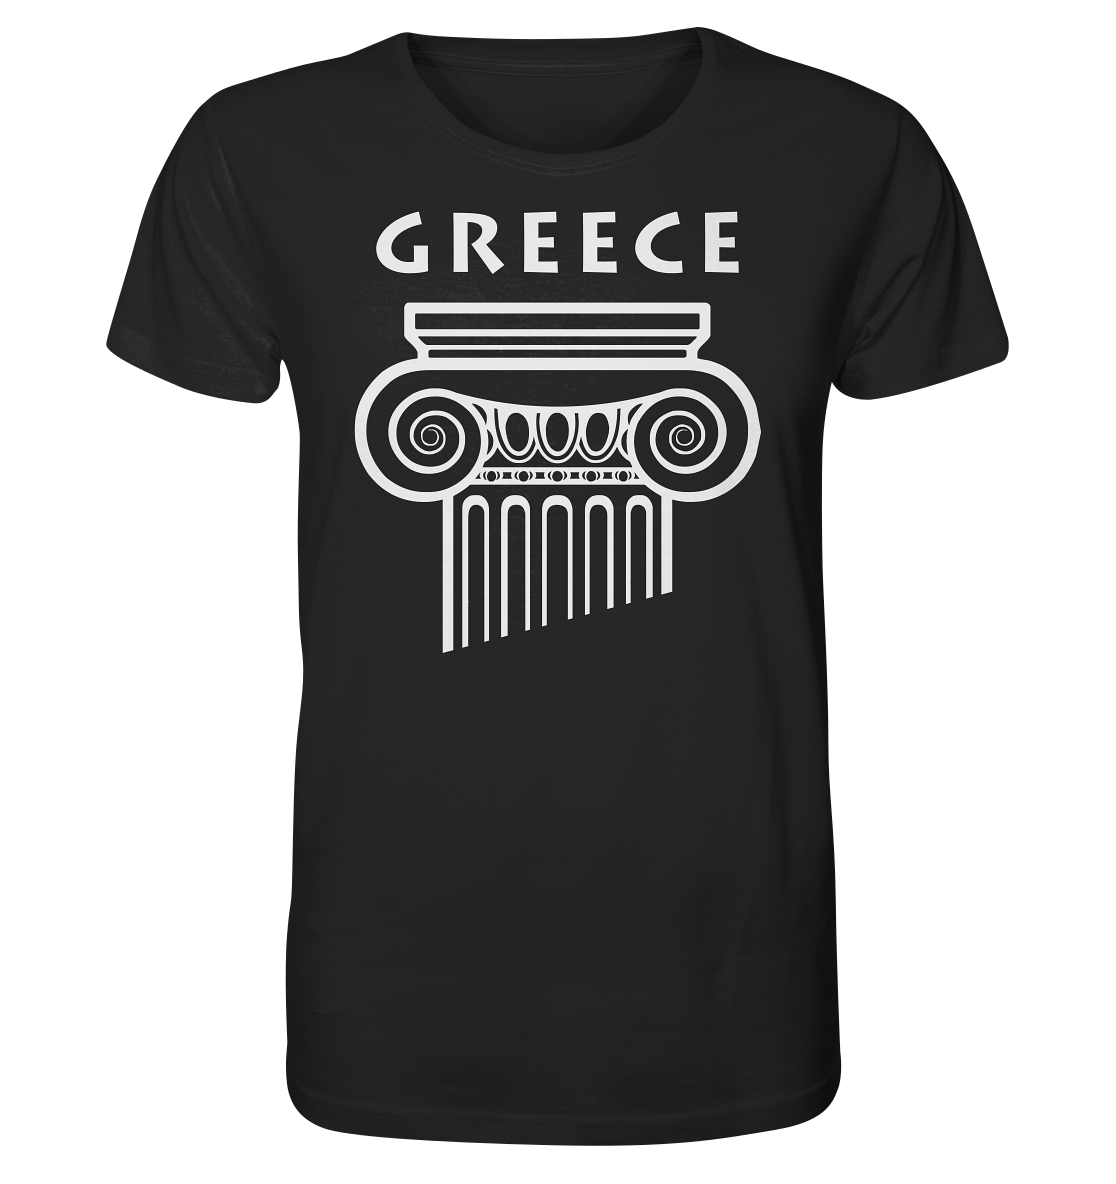 Greece Griechischer Säulenkopf - Organic Shirt